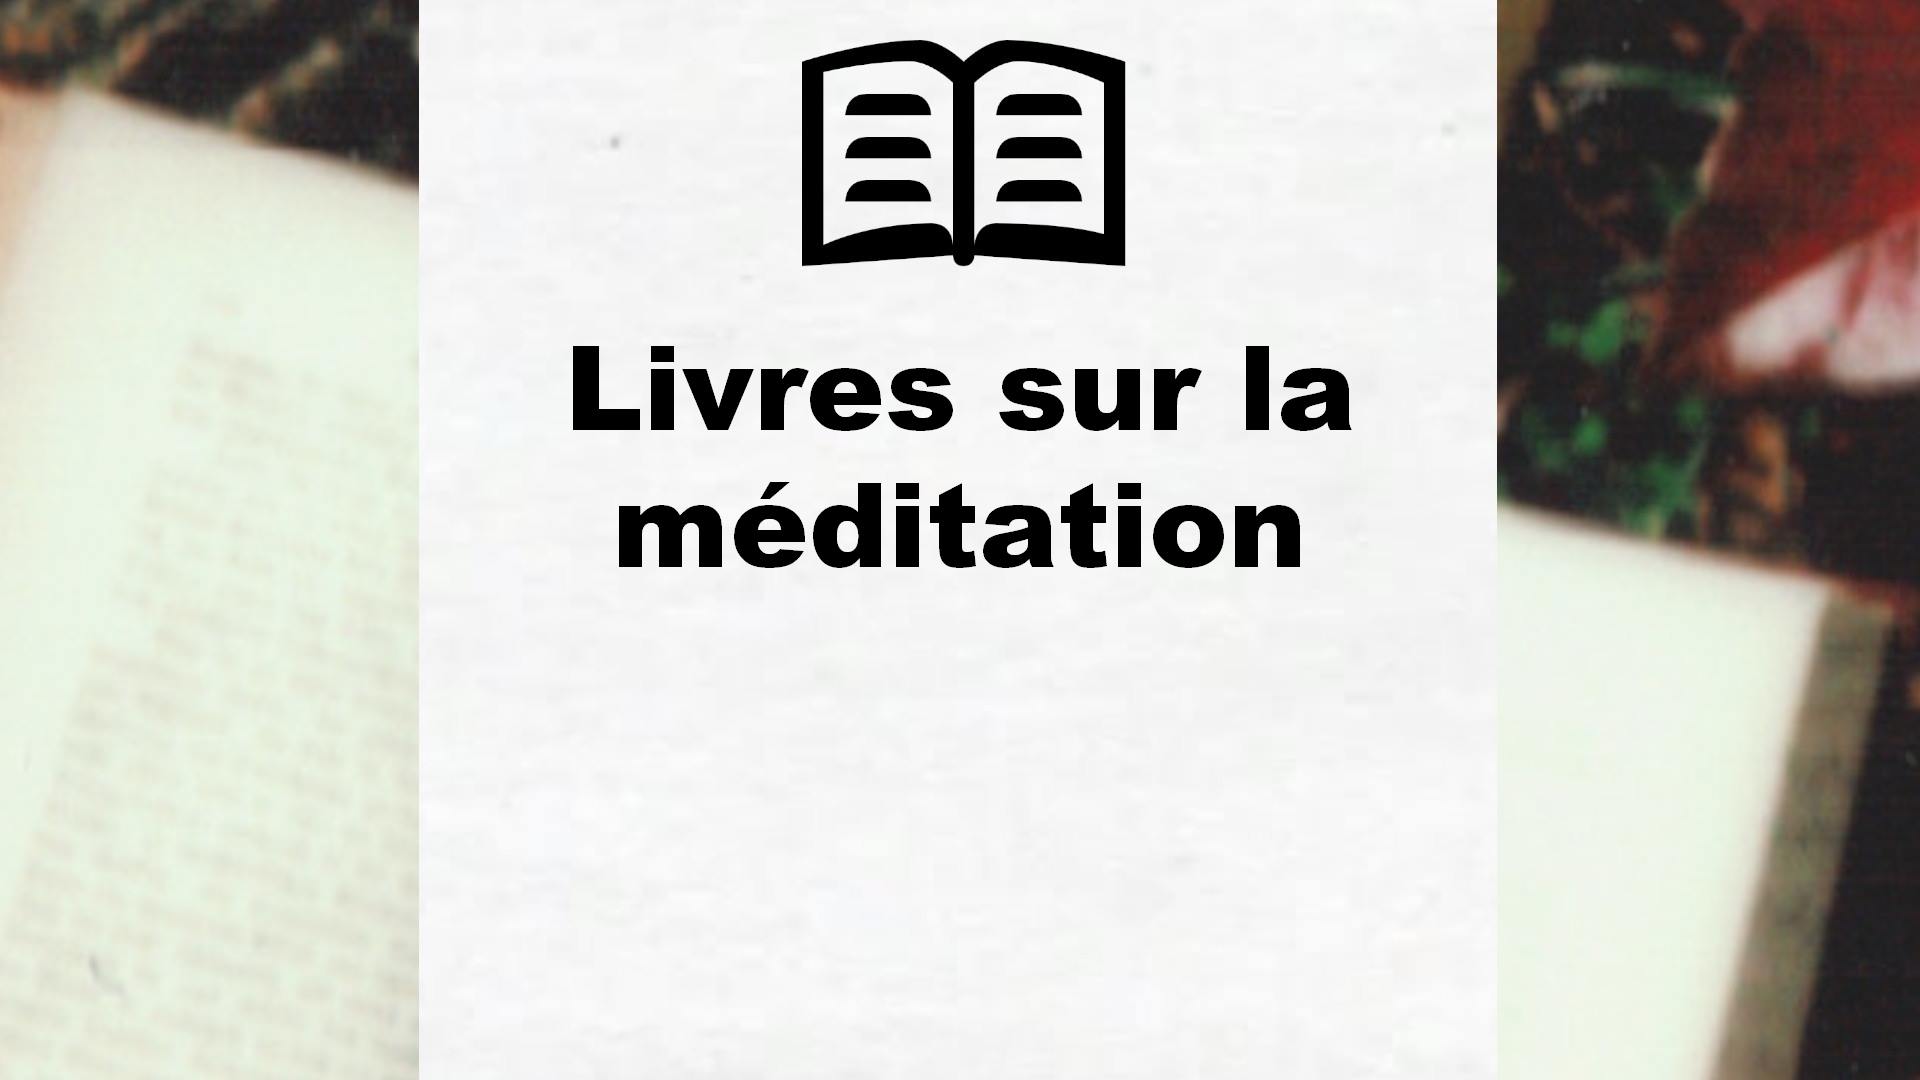 Livres sur la méditation